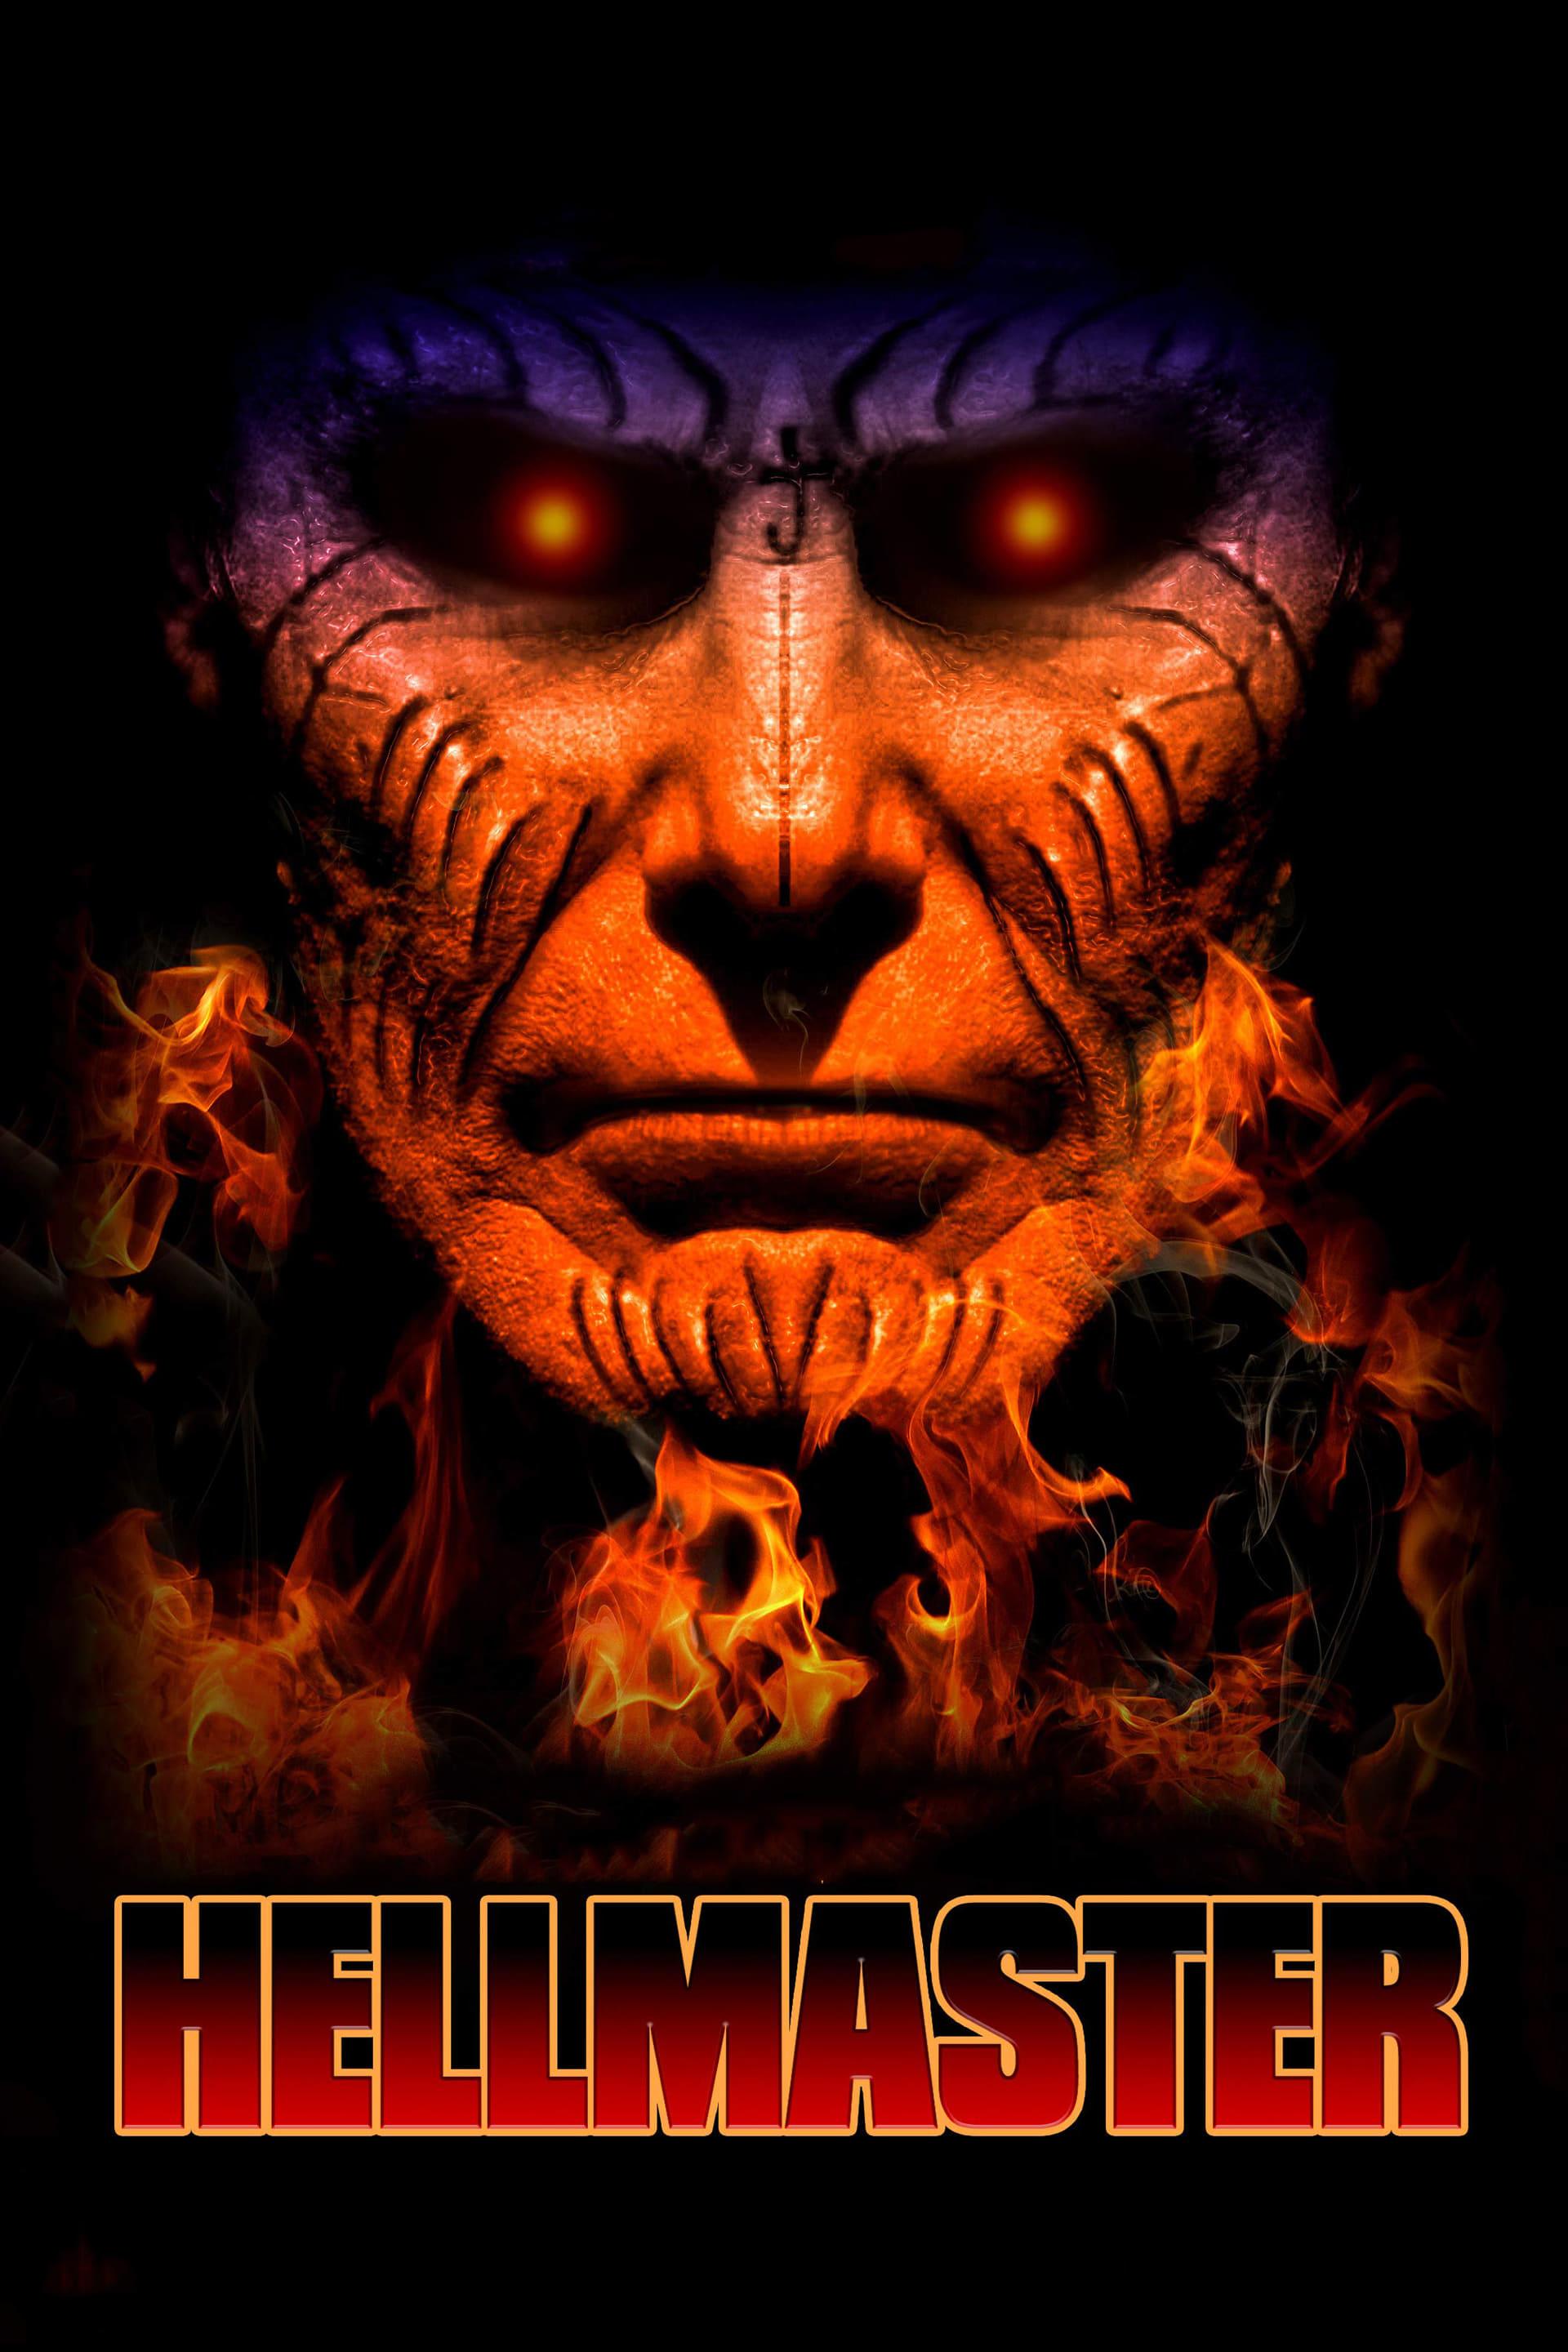 Hellmaster poster